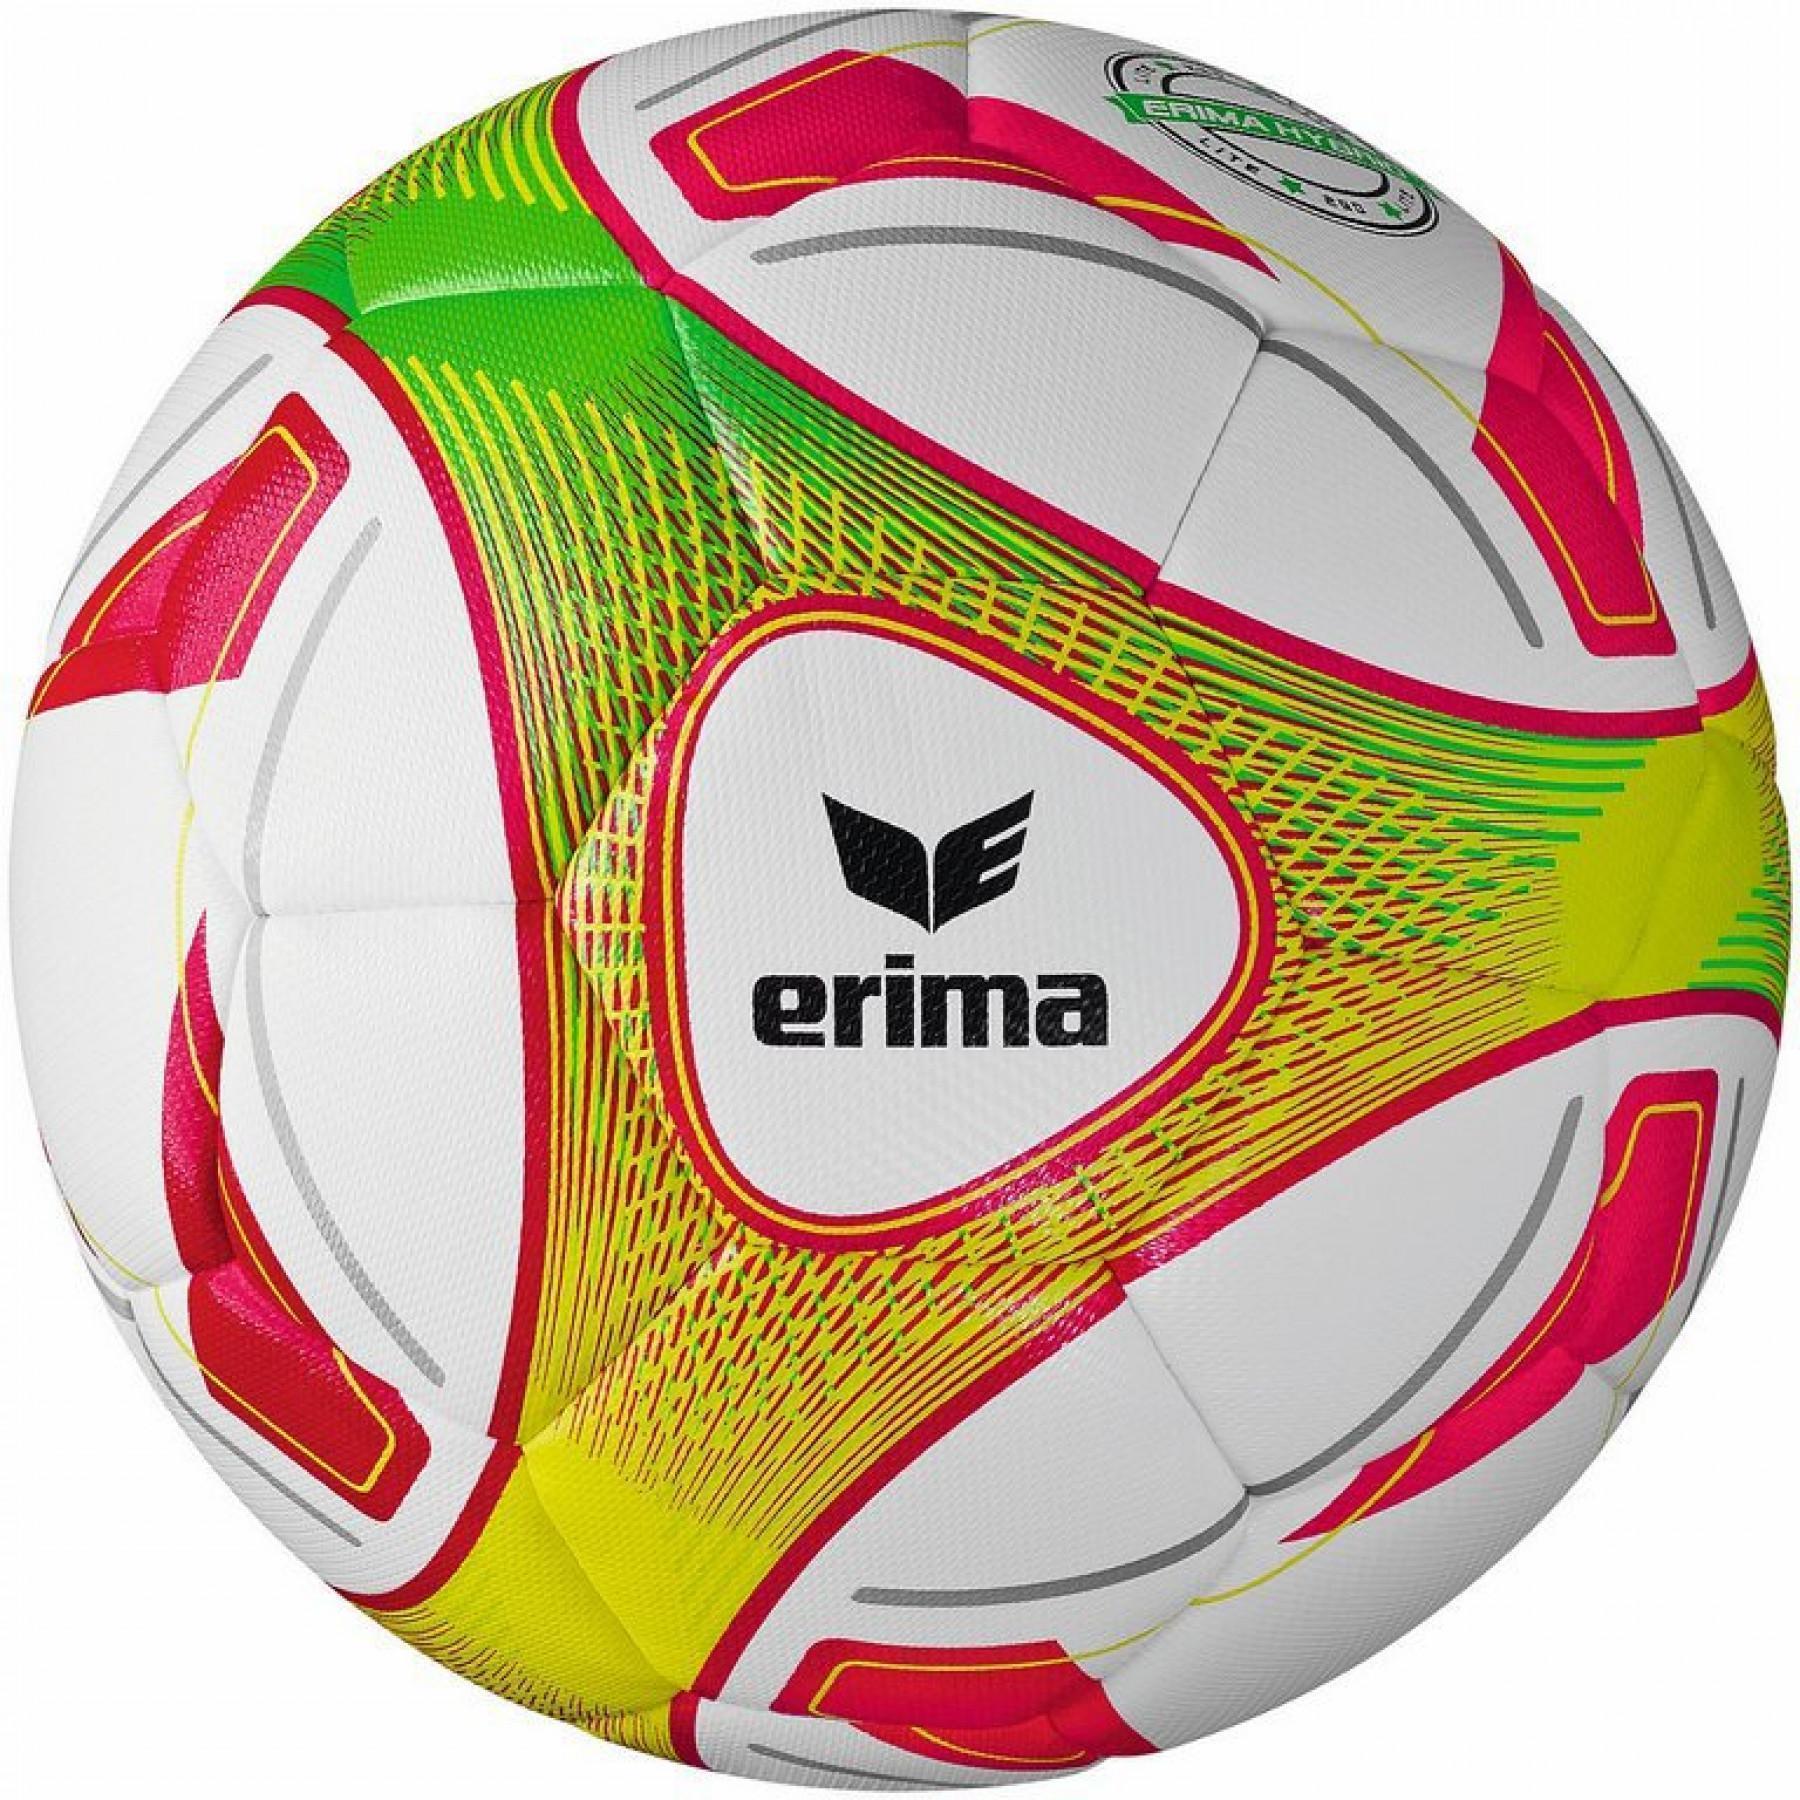 Fußball Erima Hybrid Lite 350